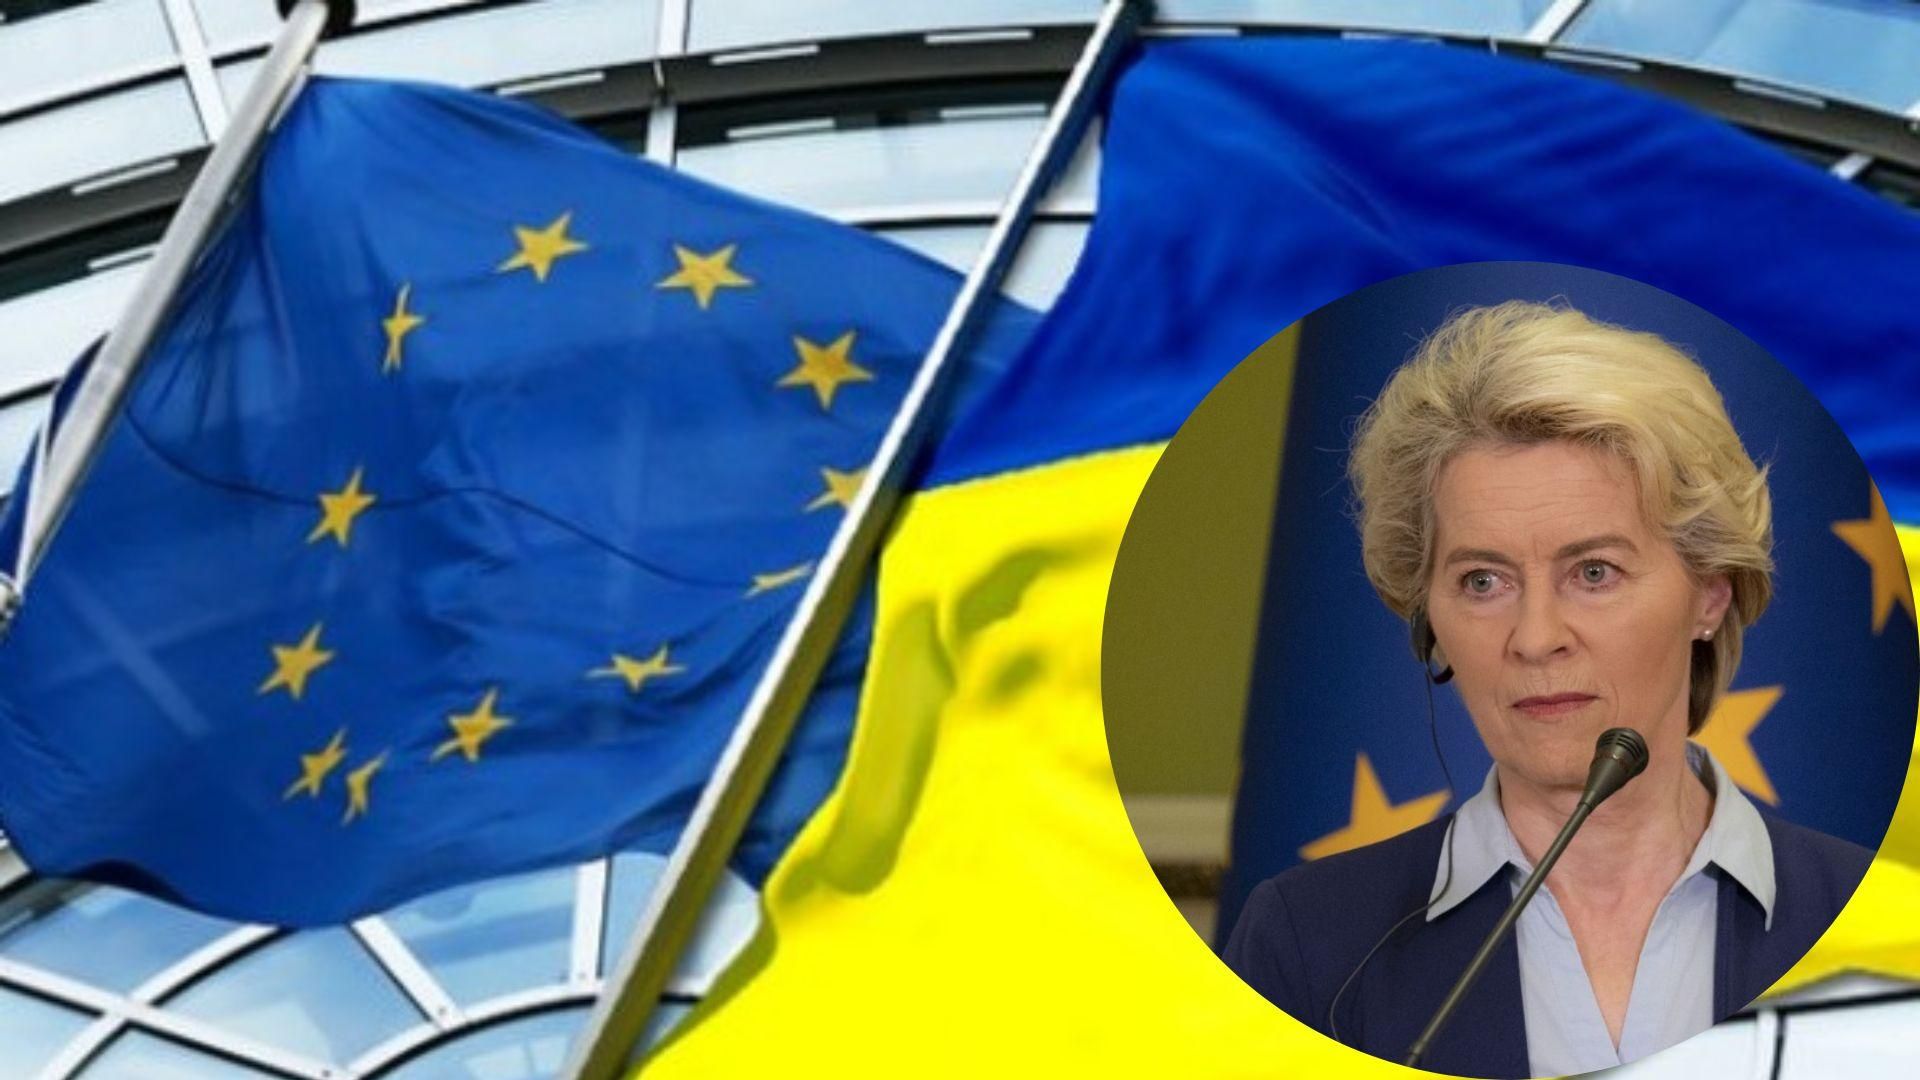 Єврокомісія визначиться щодо кандидатства України в ЄС 23 – 24 червня, – фон дер Ляєн